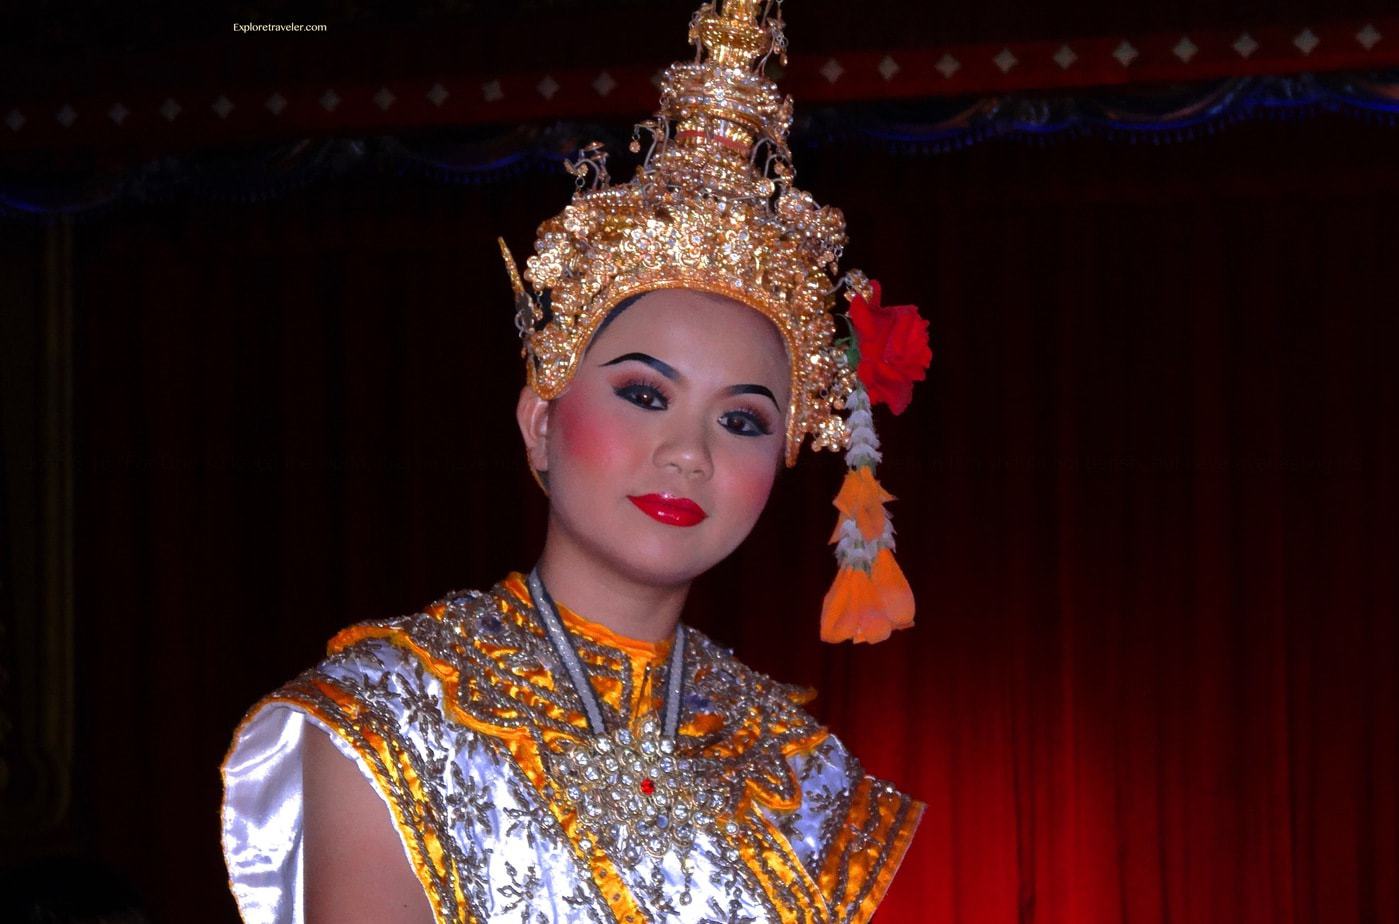 傳統的泰國舞蹈可以追溯到古代暹羅時代。